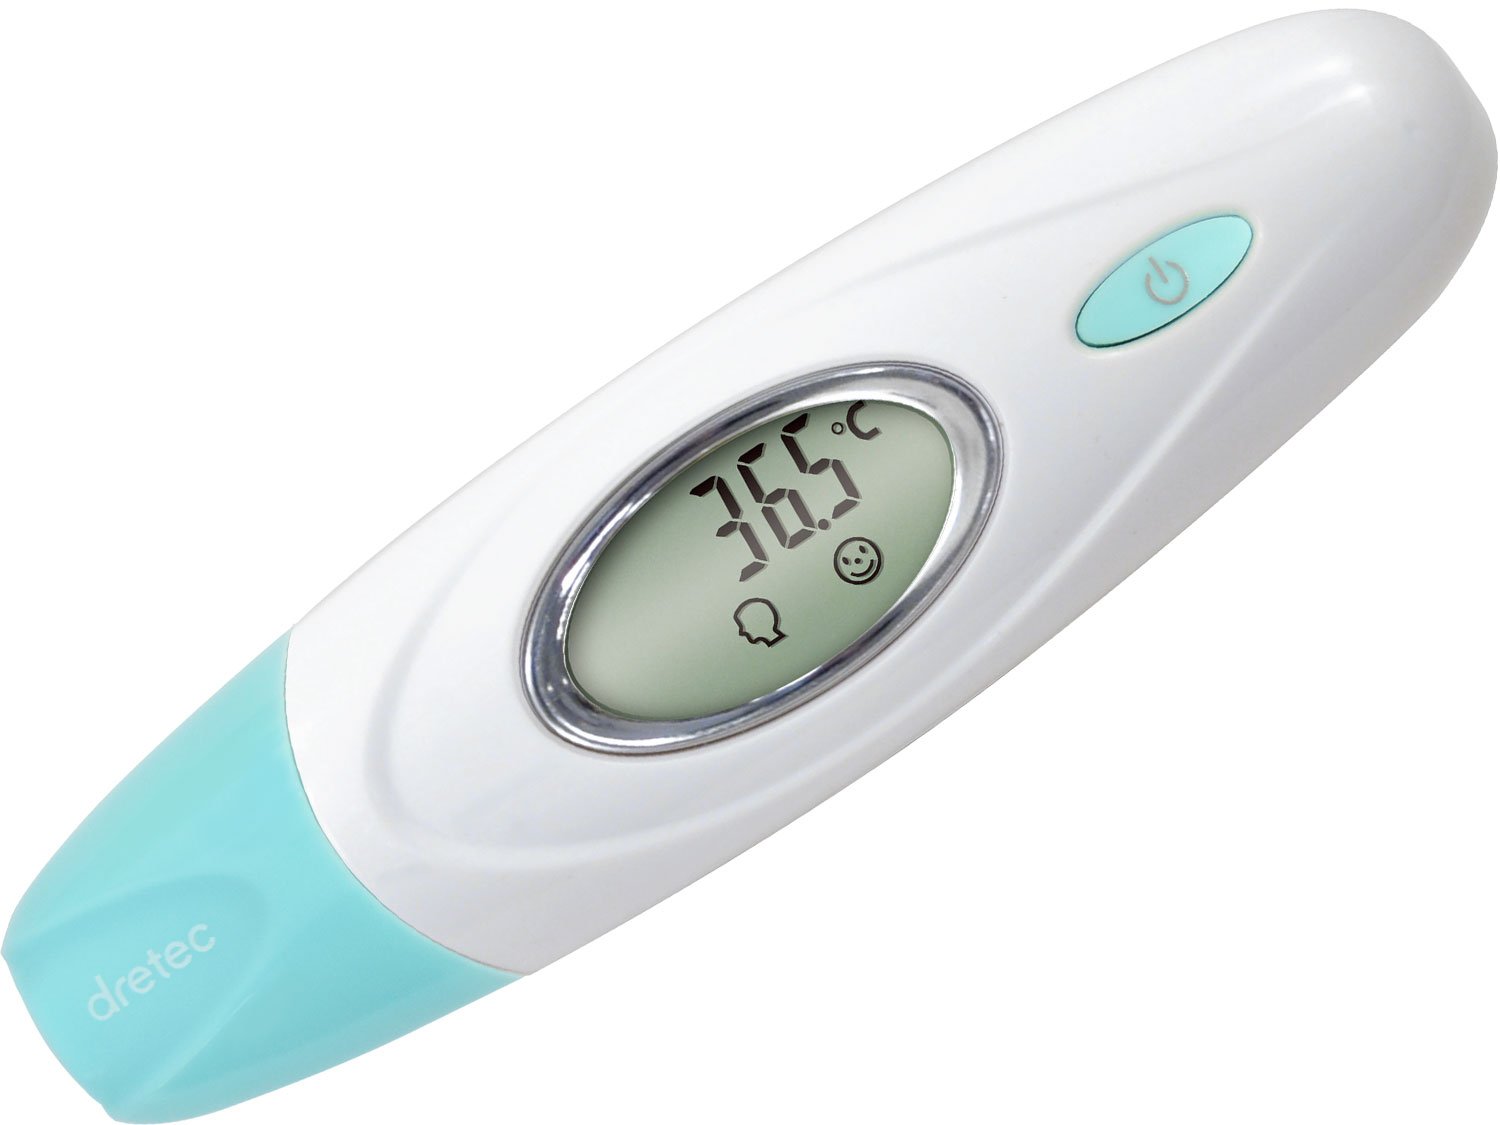 21おすすめの赤ちゃん用体温計人気ランキング 正確に計測 モノナビ おすすめの家具 家電のランキング